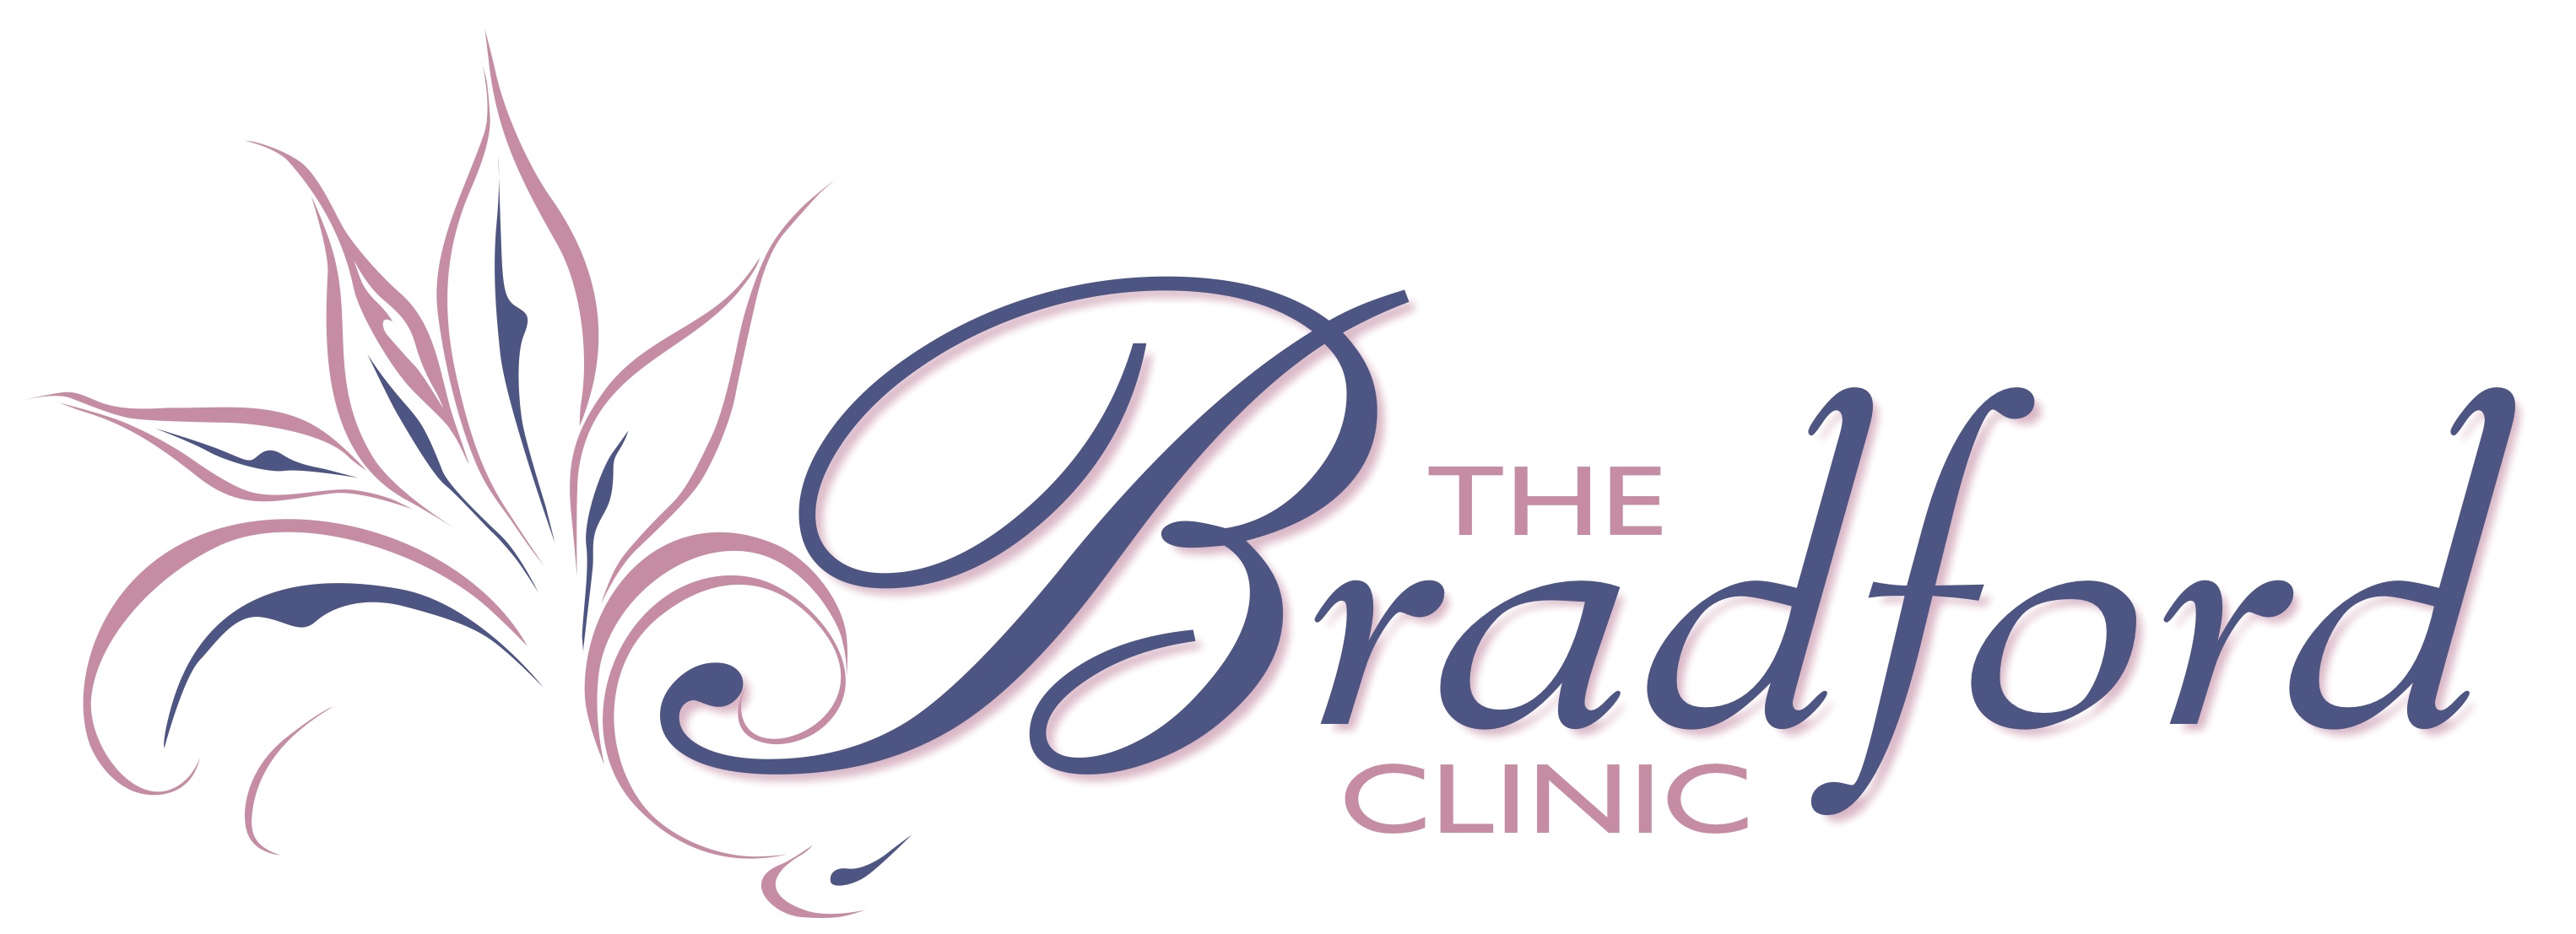 The Bradford Clinic - Toowoomba